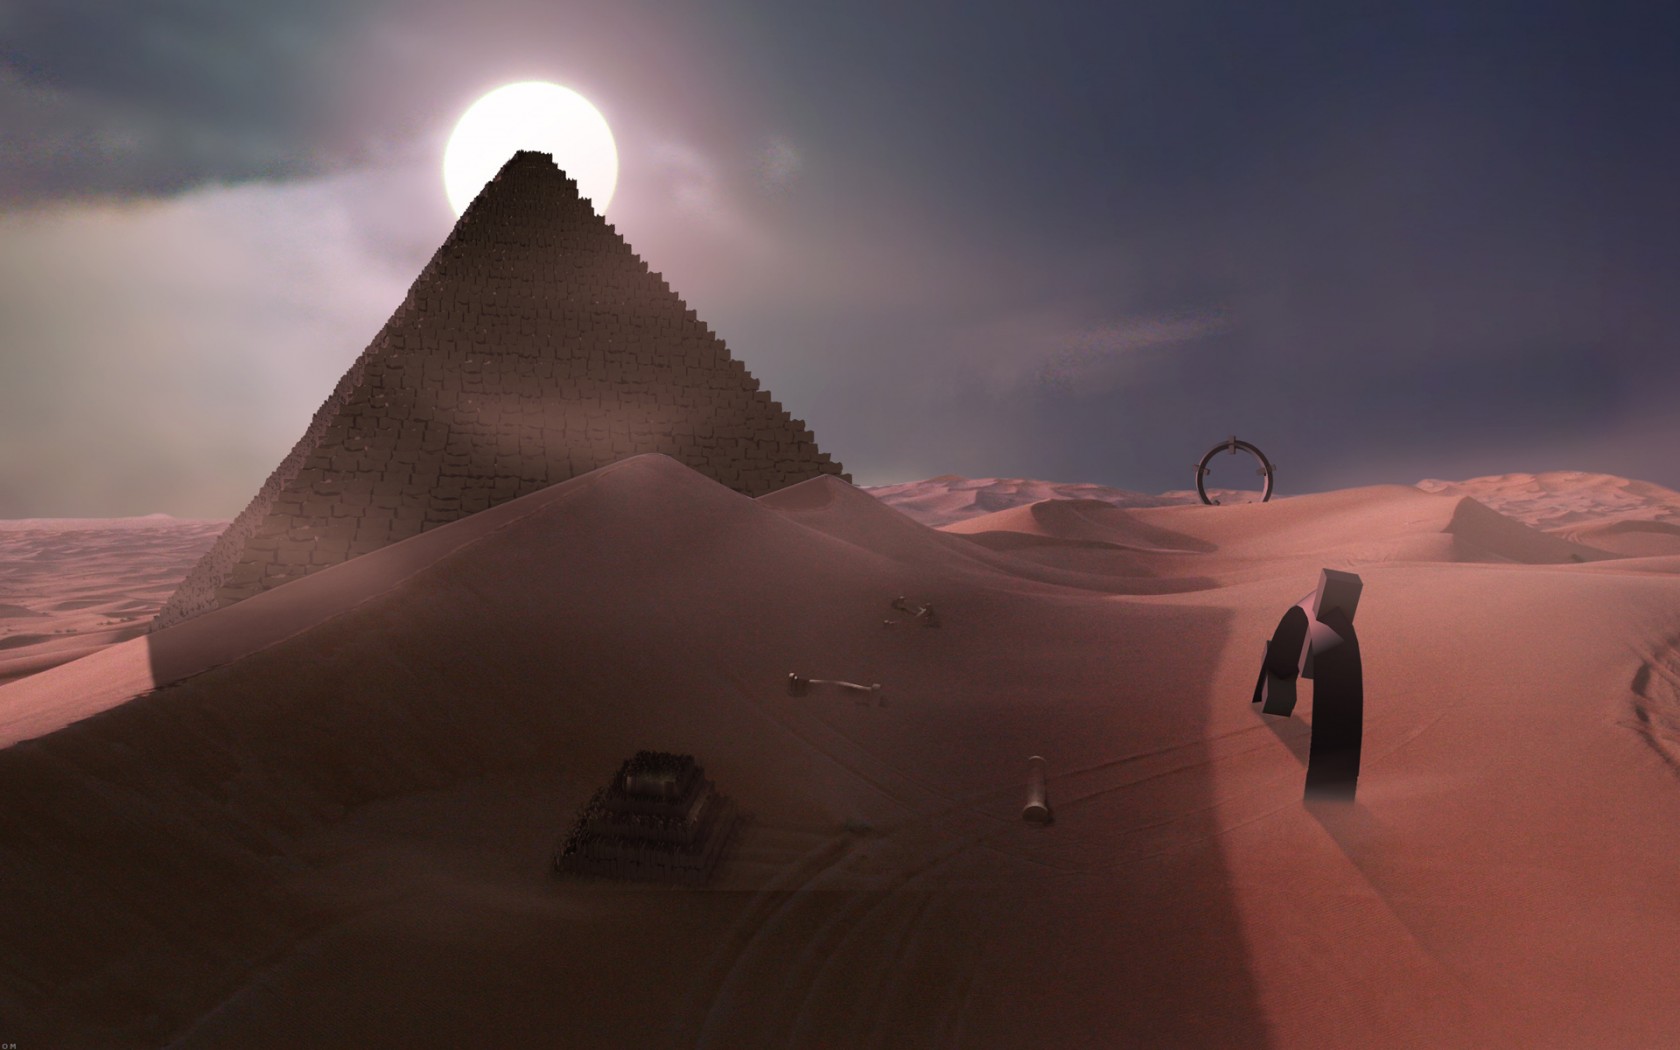 fondos de pantalla fotos hd,desierto,cielo,pirámide,paisaje,arena